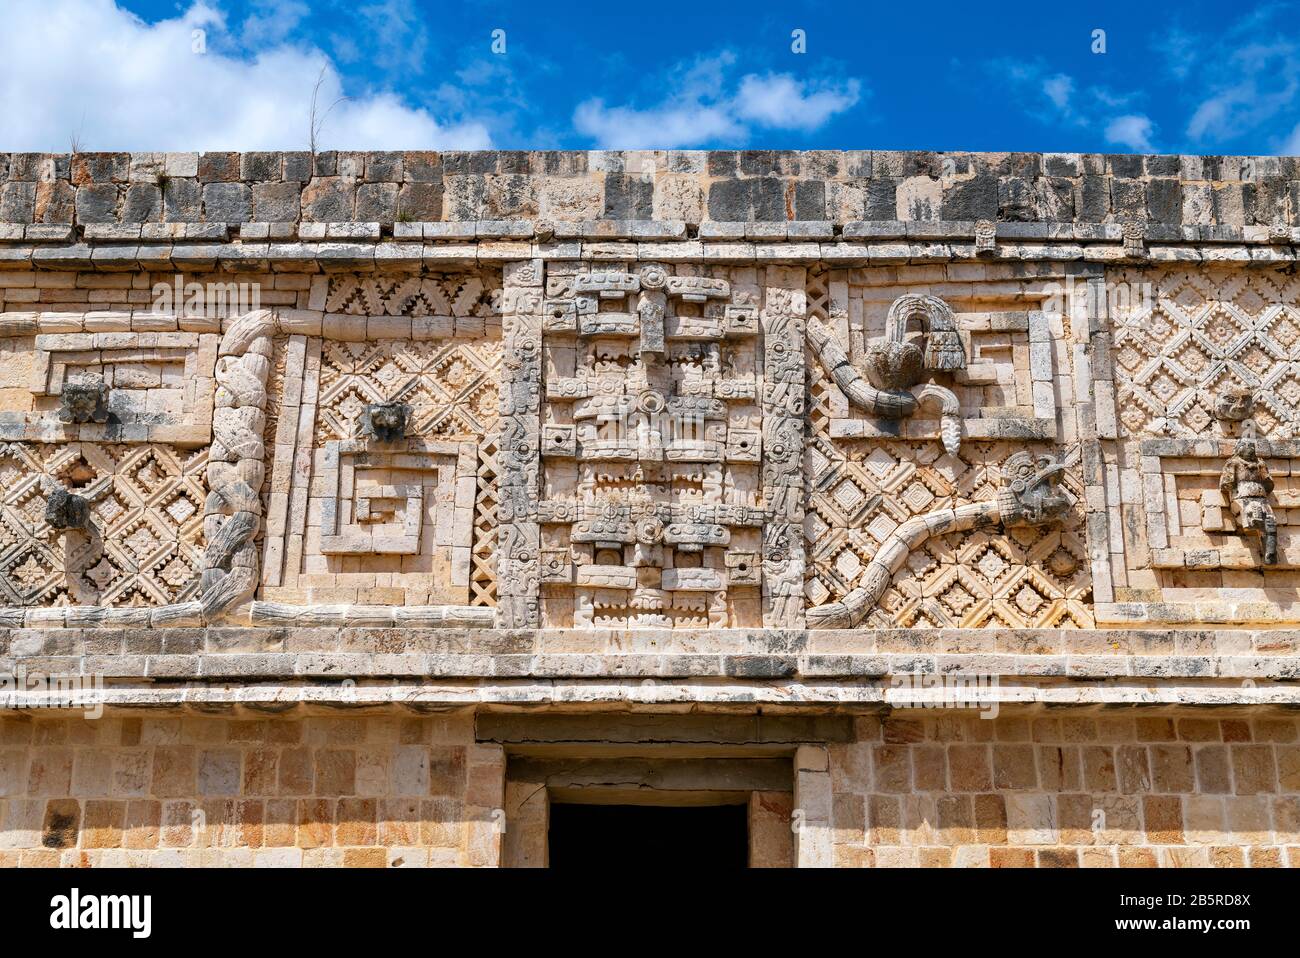 Dettaglio architettonico del Quadrangle Nunnery all'interno del sito Maya di Uxmal vicino Merida, penisola dello Yucatan, Messico. Foto Stock